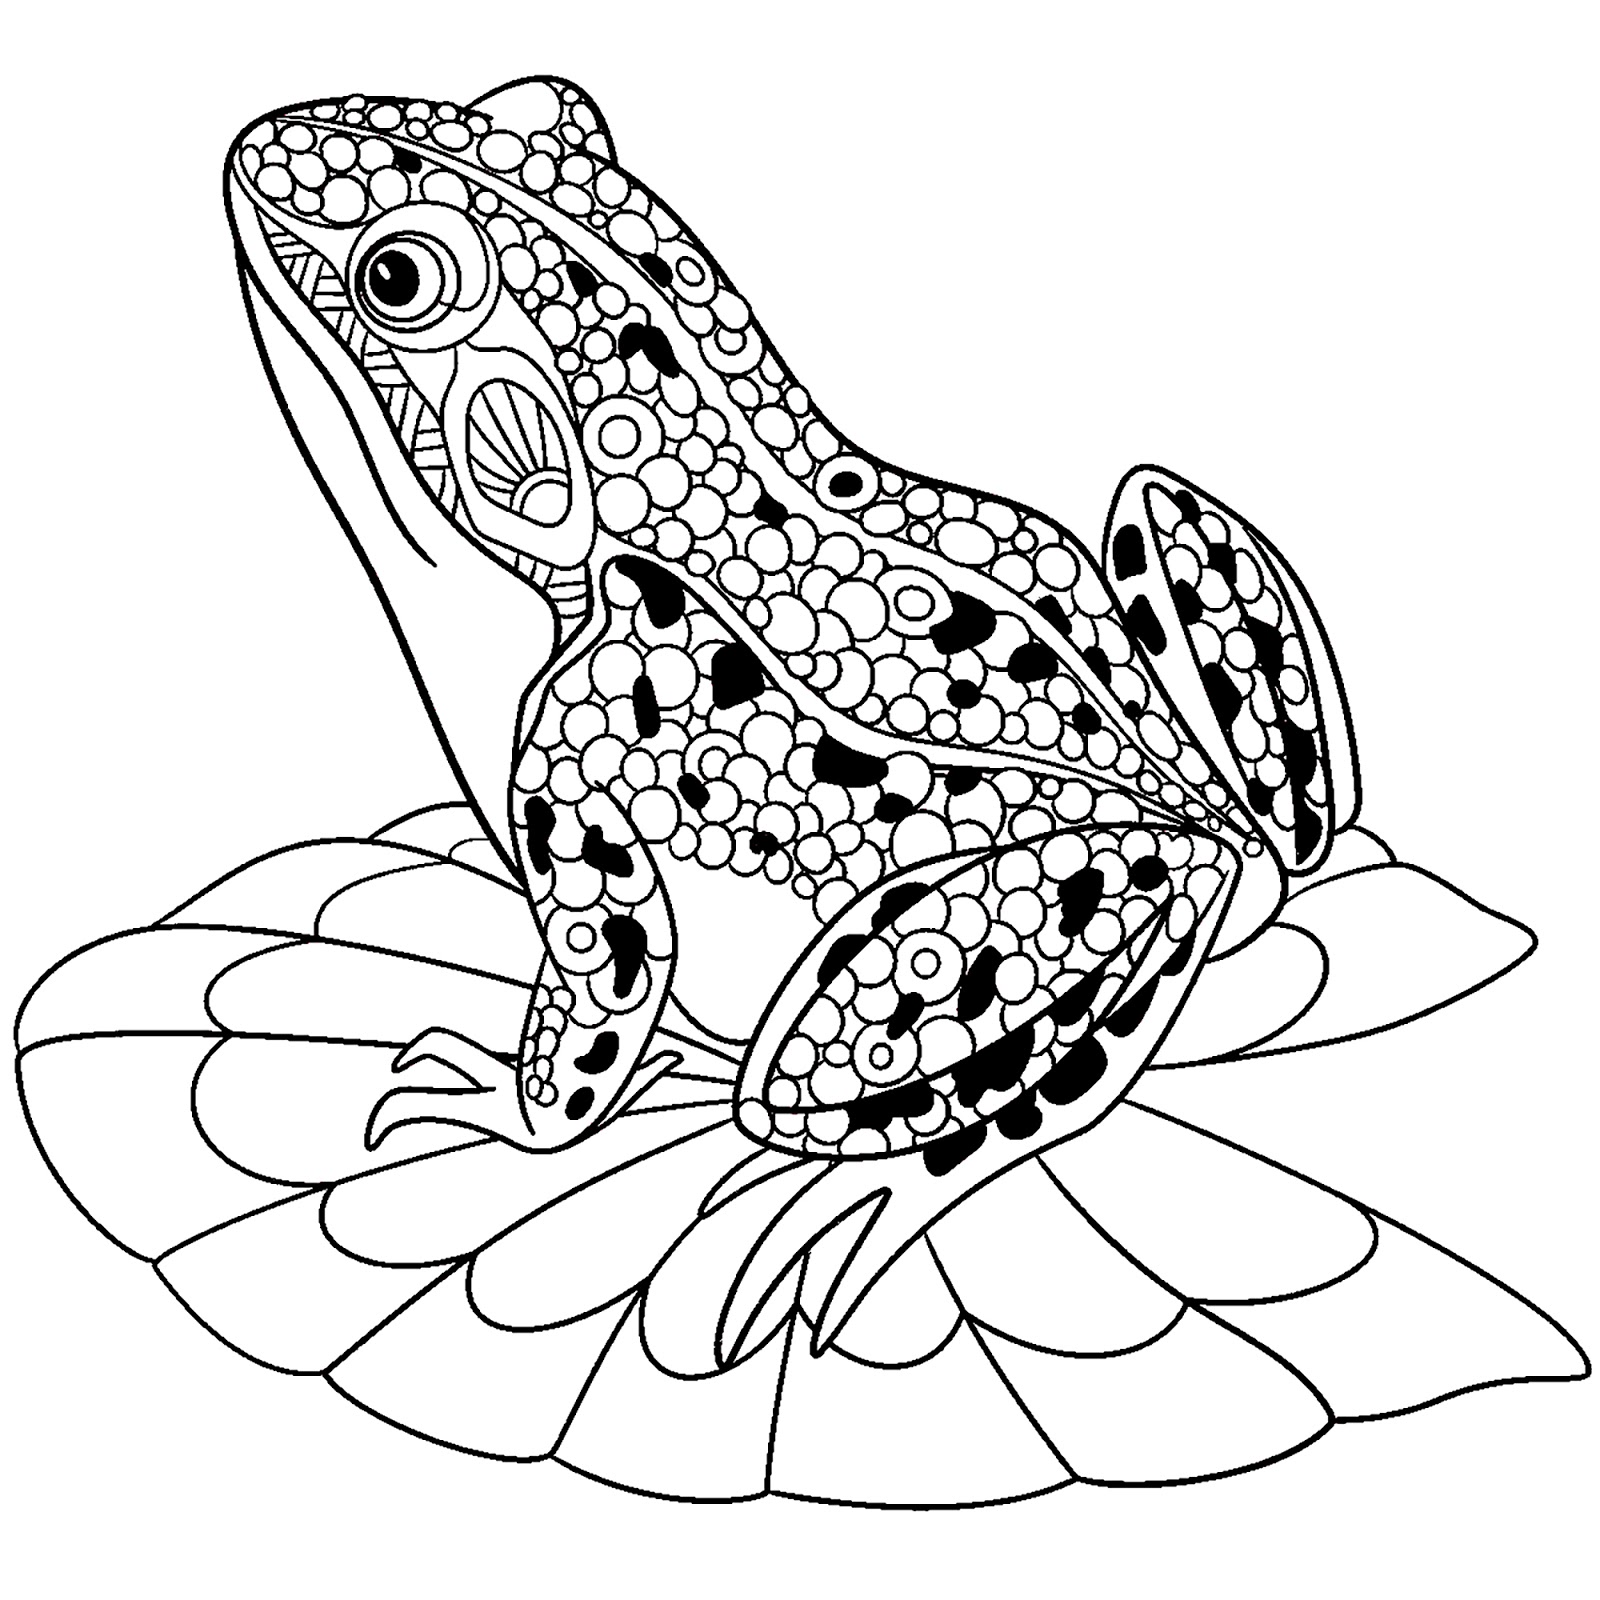 Tranh tô màu chú ếch được trang trí